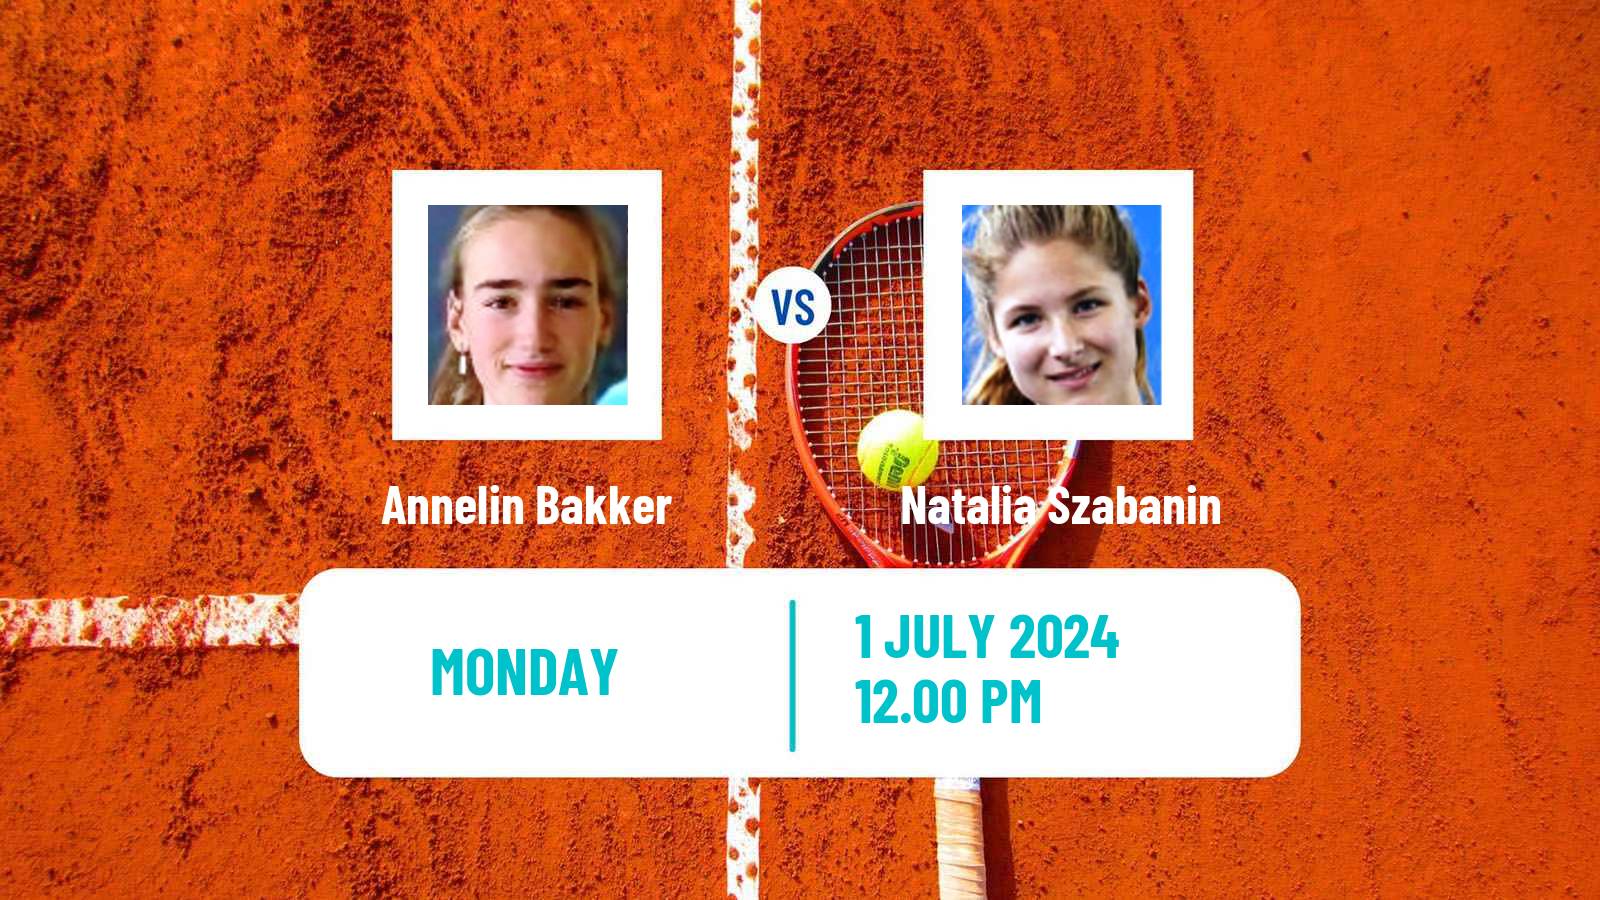 Tennis ITF W35 Amstelveen Women Annelin Bakker - Natalia Szabanin